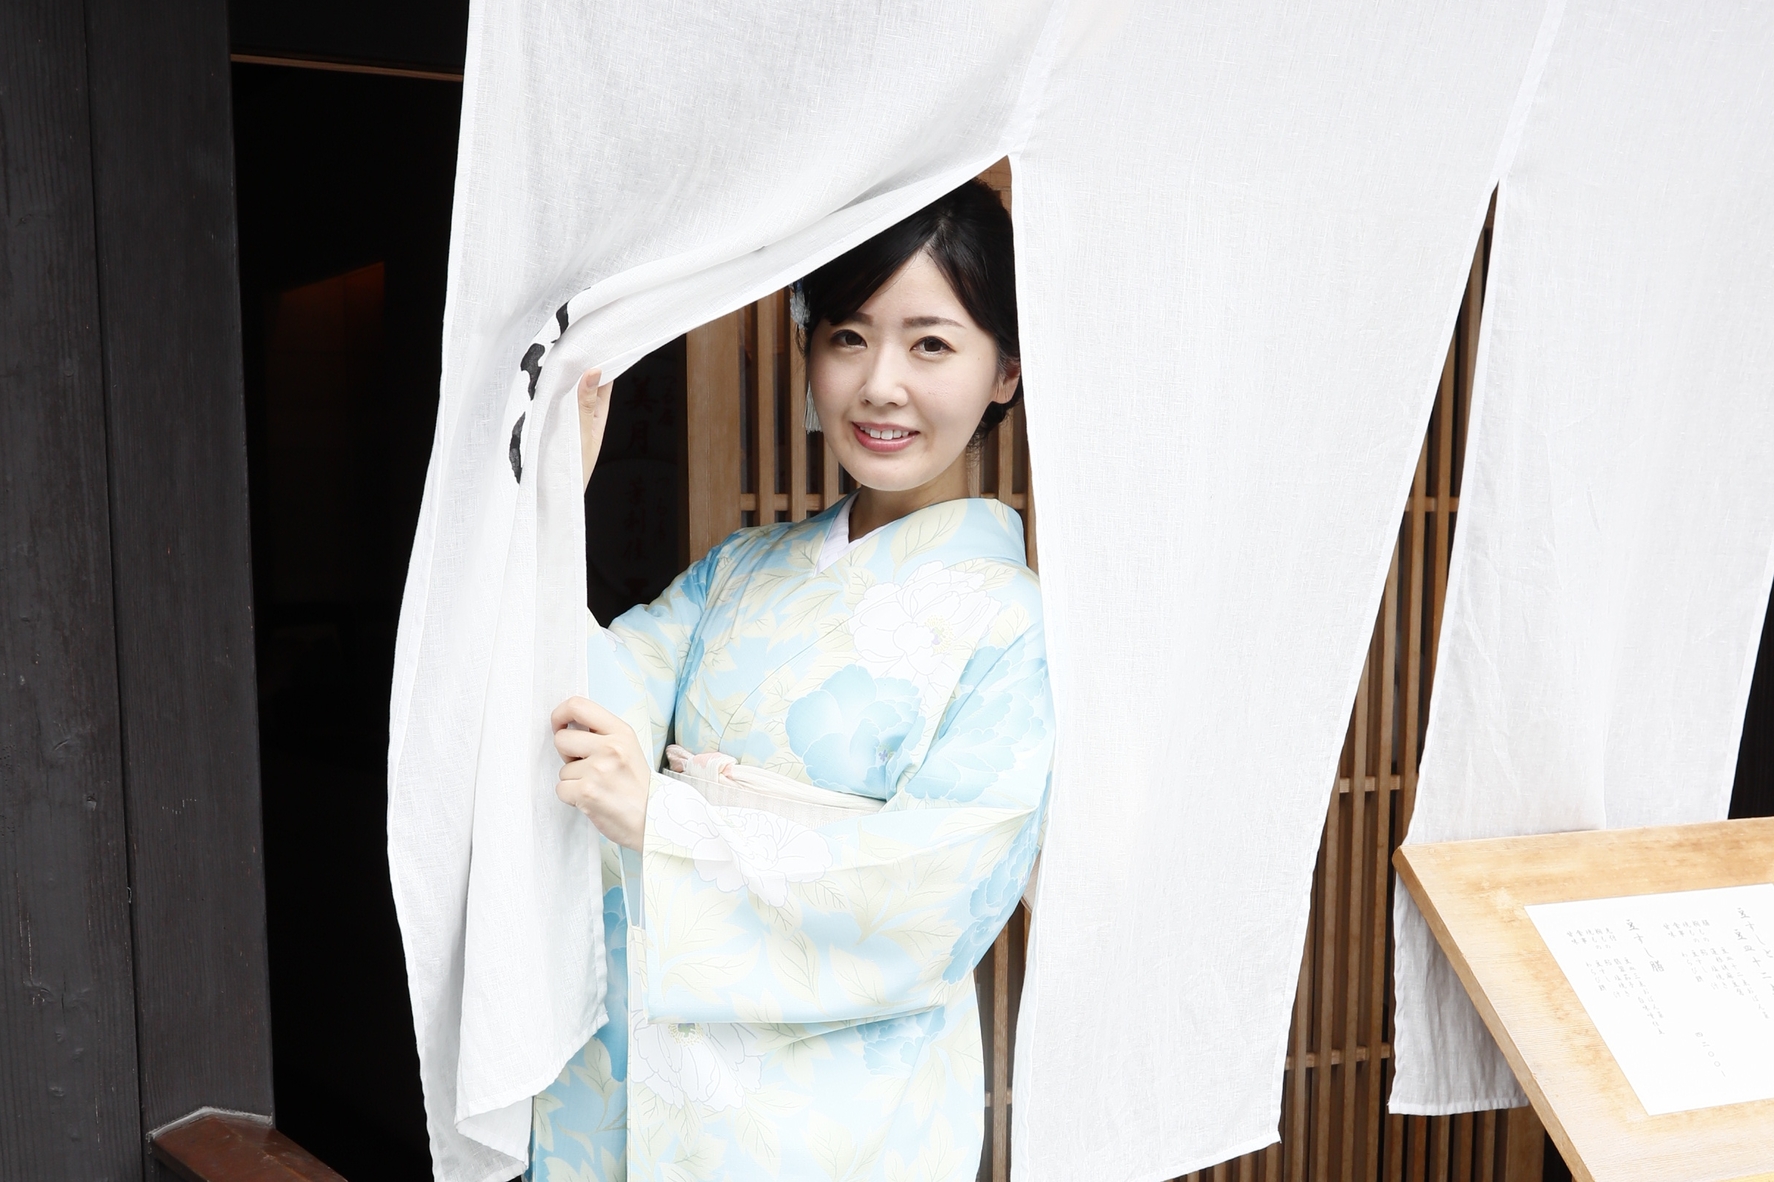 ミスきものがオススメ 京都 祇園の 絶対口説ける デートコースとは Forza Style ファッション ライフスタイル フォルツァスタイル